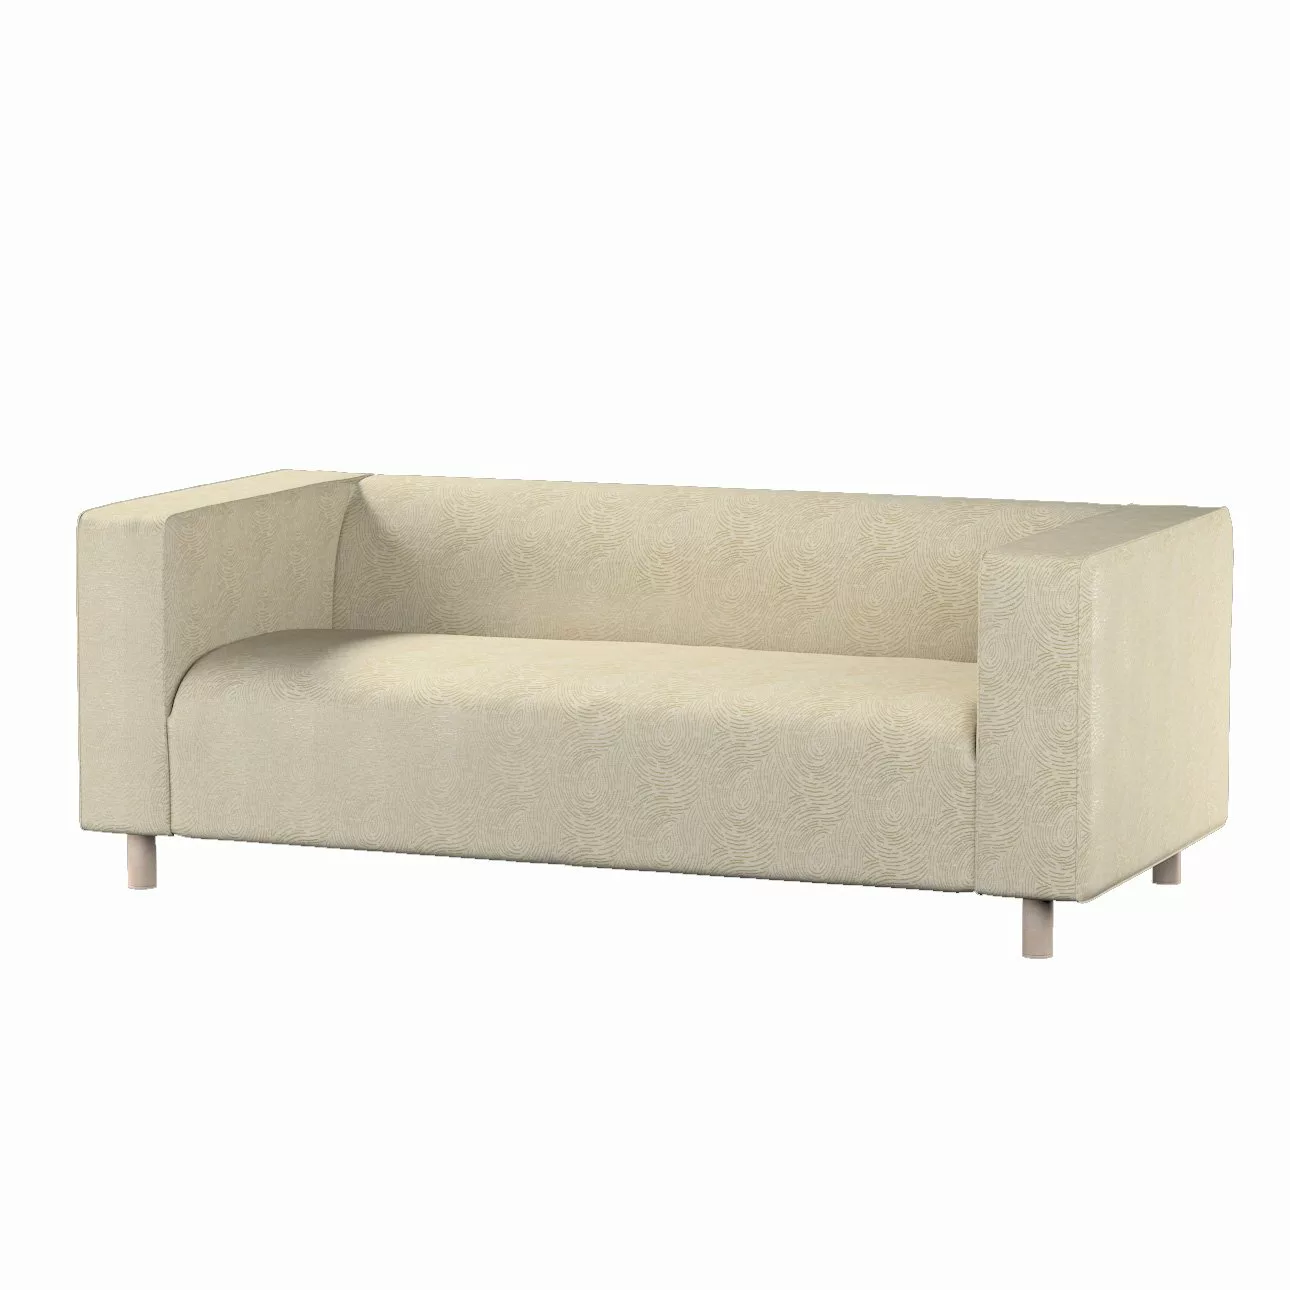 Bezug für Klippan 2-Sitzer Sofa, beige-golden, Sofahusse, Klippan 2-Sitzer, günstig online kaufen